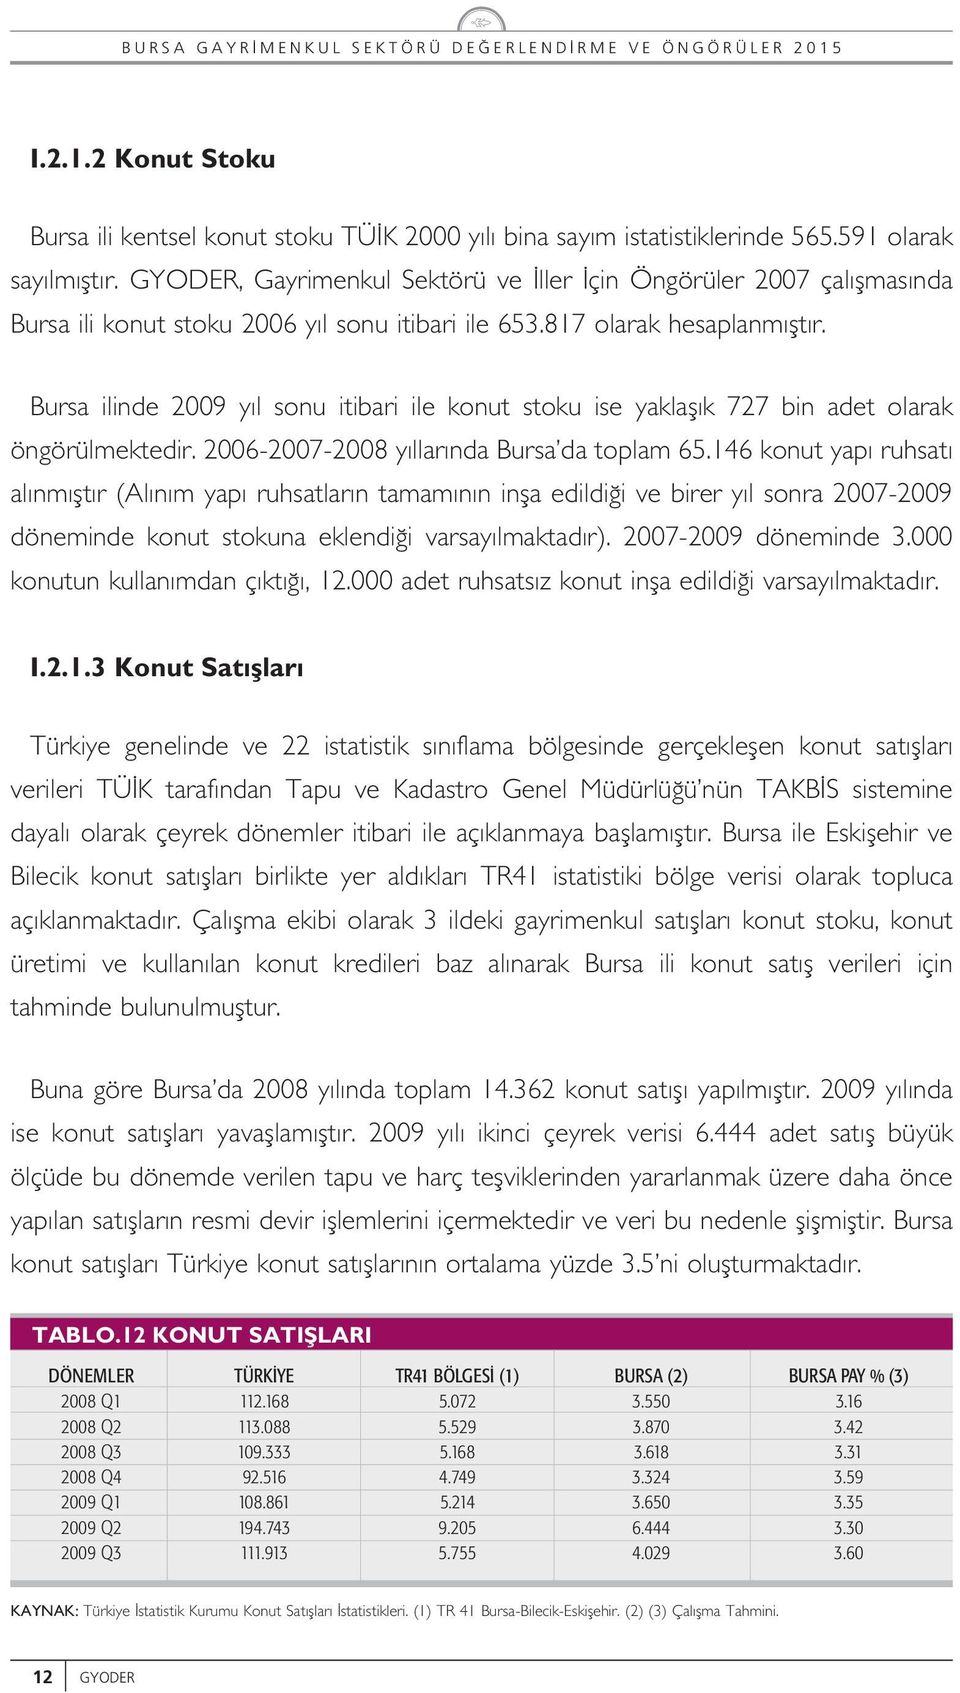 Brsa iinde 2009 y son itibari ie kont stok ise yakaf k 727 bin adet oarak öngörümektedir. 2006-2007-2008 y ar nda Brsa da topam 65.